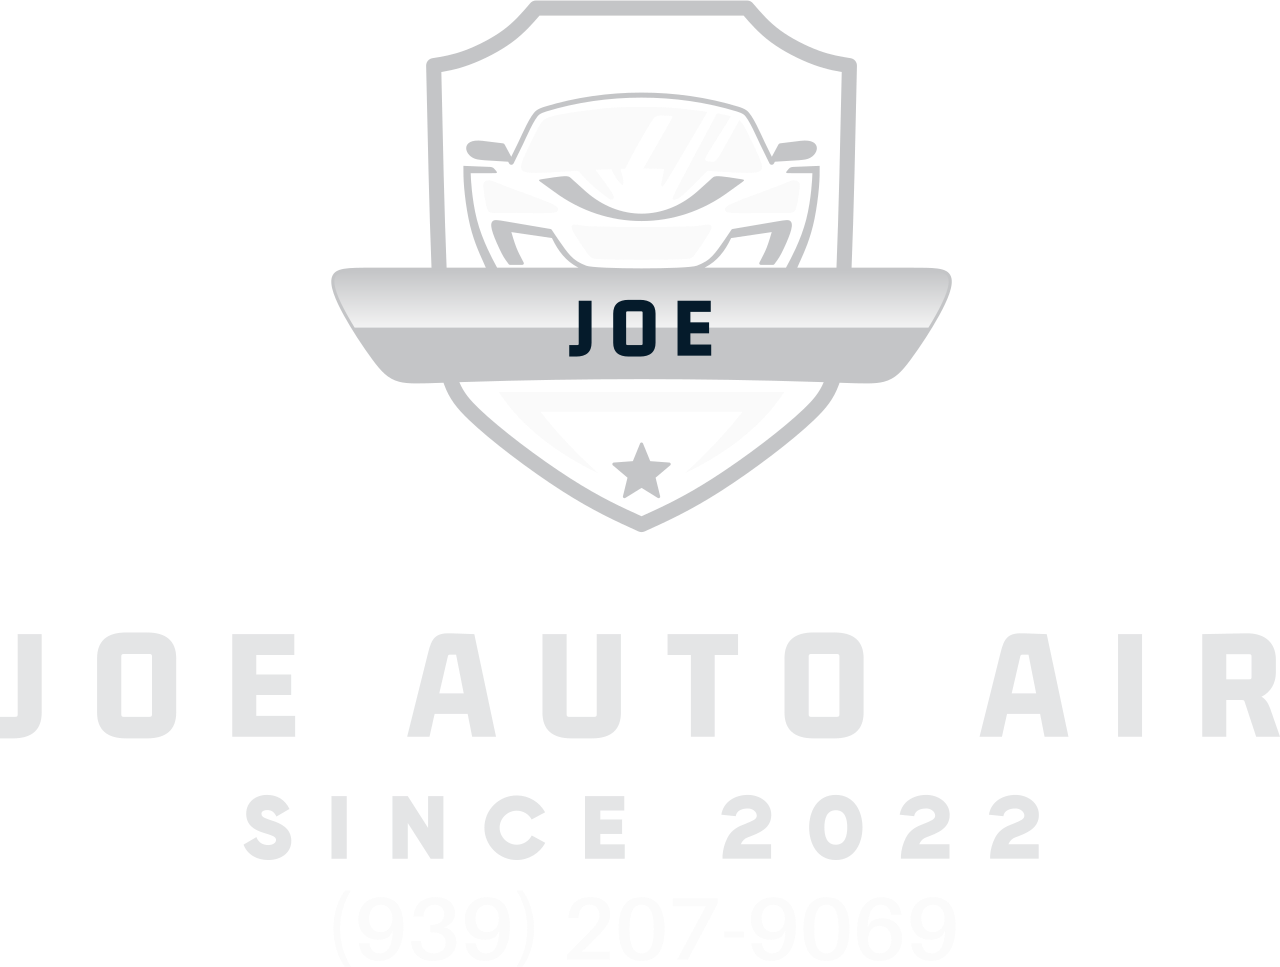 Joe auto air's web page